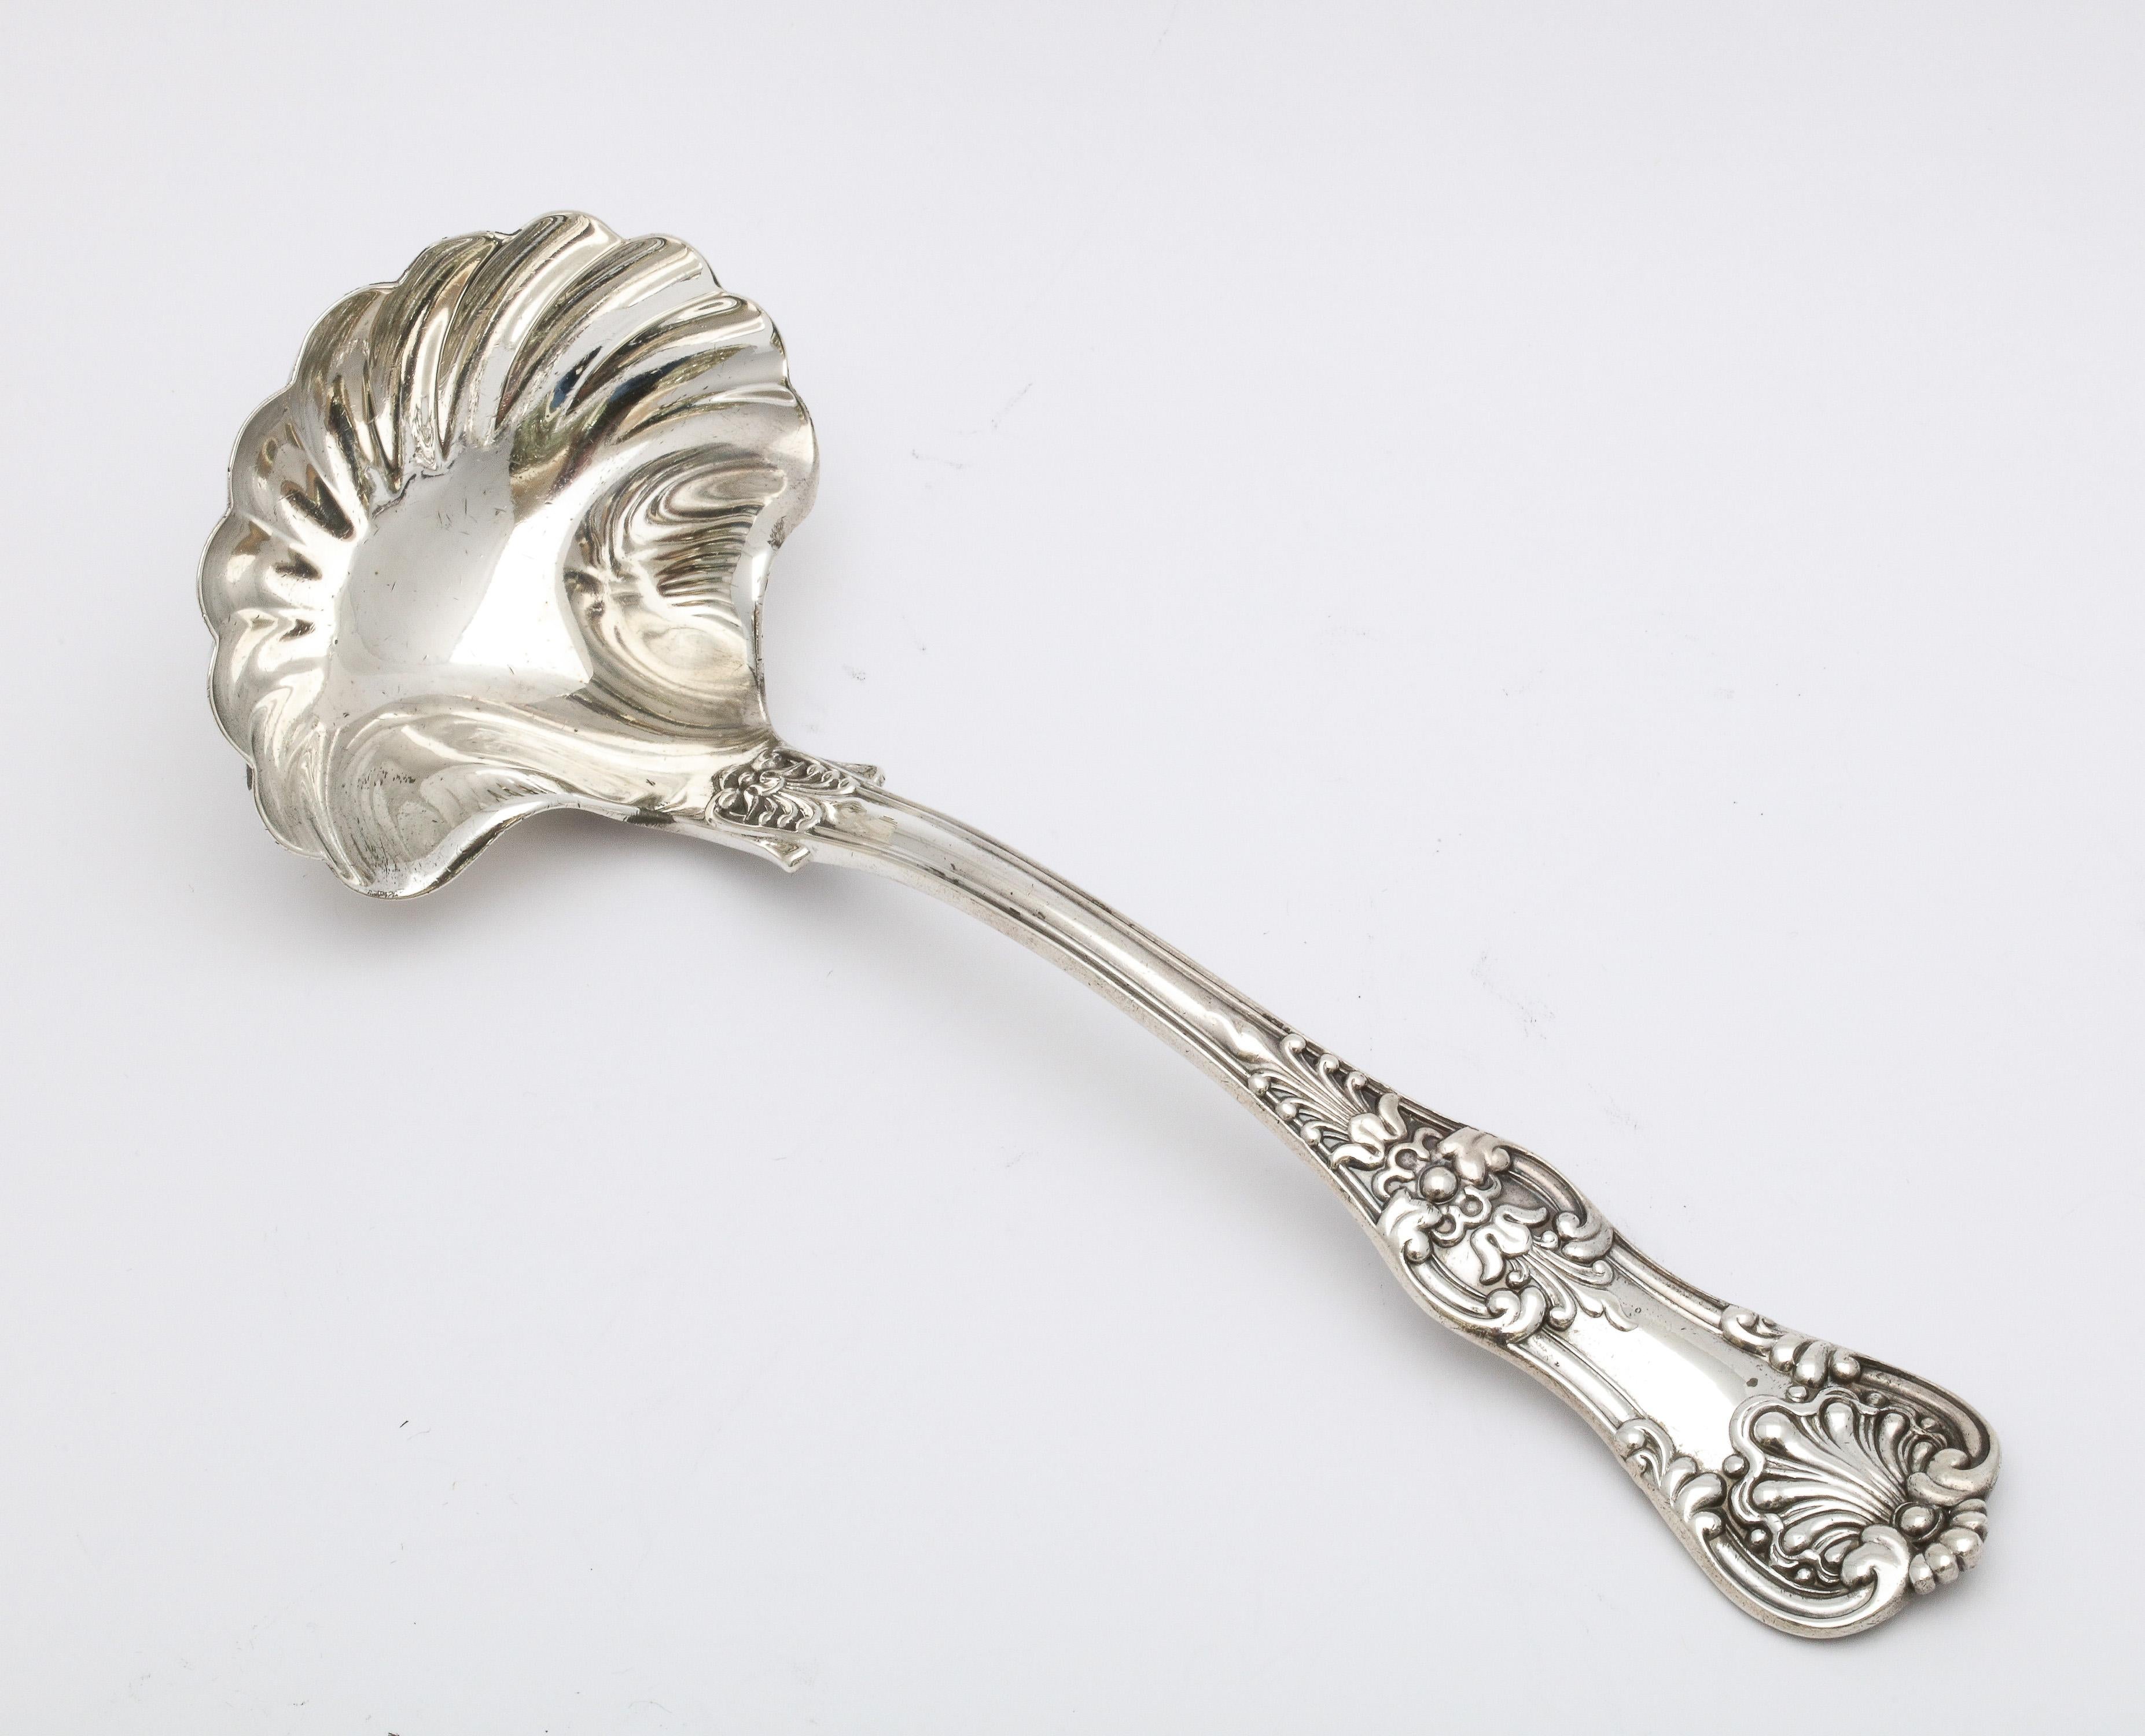 Antiguo cucharón de plata de ley de la Época Victoriana, Tiffany & Co., Nueva York, Ca. 1885. Un diseño precioso. Mide casi 7 pulgadas y media de largo x 2 pulgadas y 3/4 de profundidad en el cuenco del cazo (punto más ancho) x 2 pulgadas de alto en